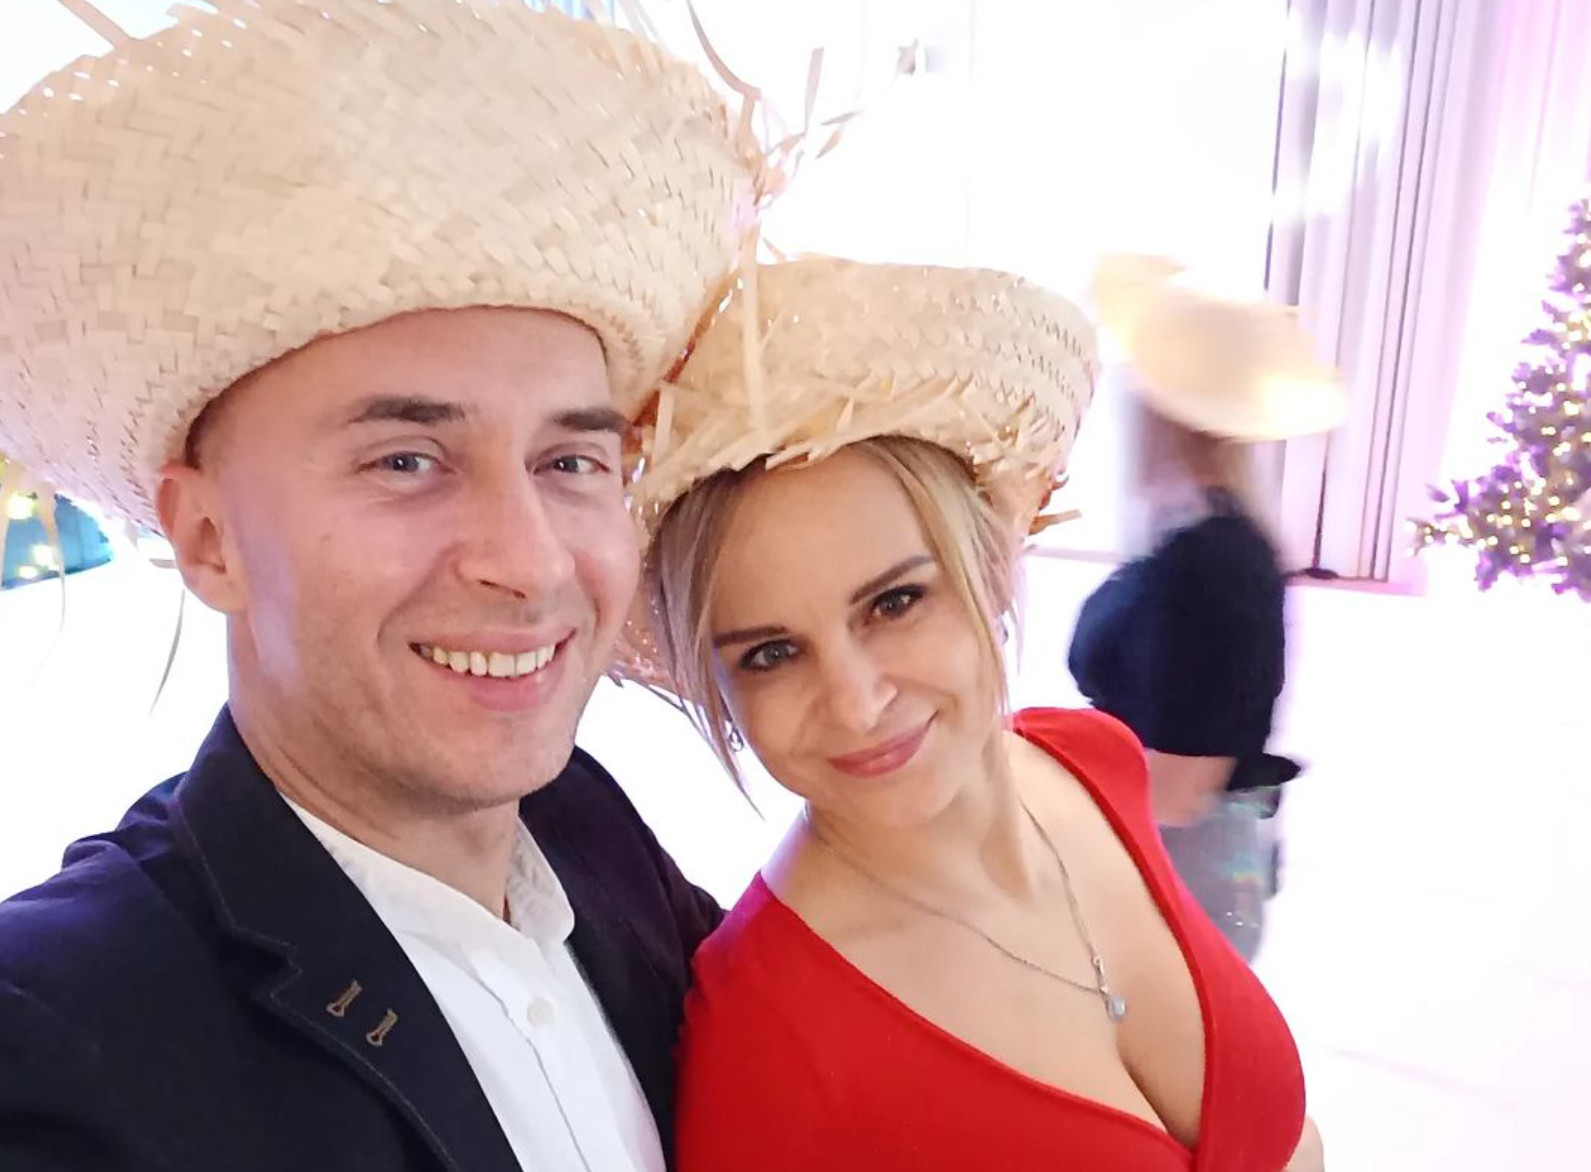 Znany gwiazdor disco polo pokazał ukochaną żonę na Instagramie! Justyna Gesek to przepiękna kobieta! 